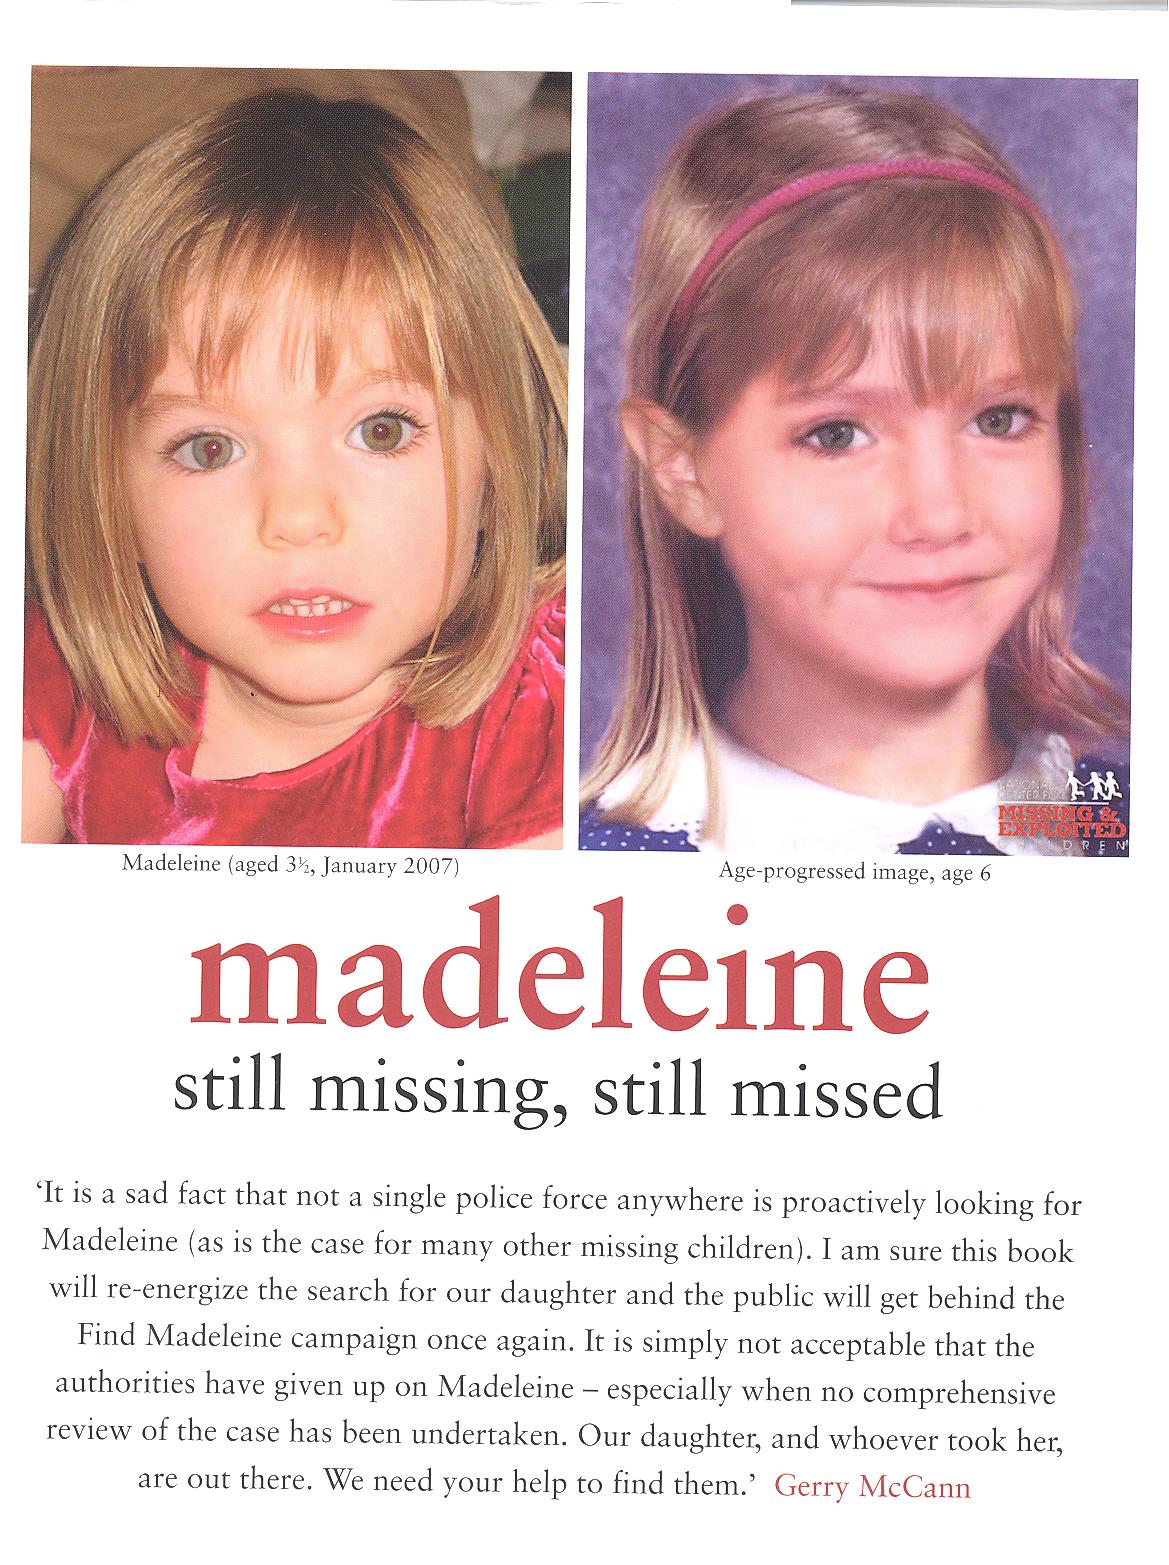 Madeleine+mccann+found+2011+daily+mail